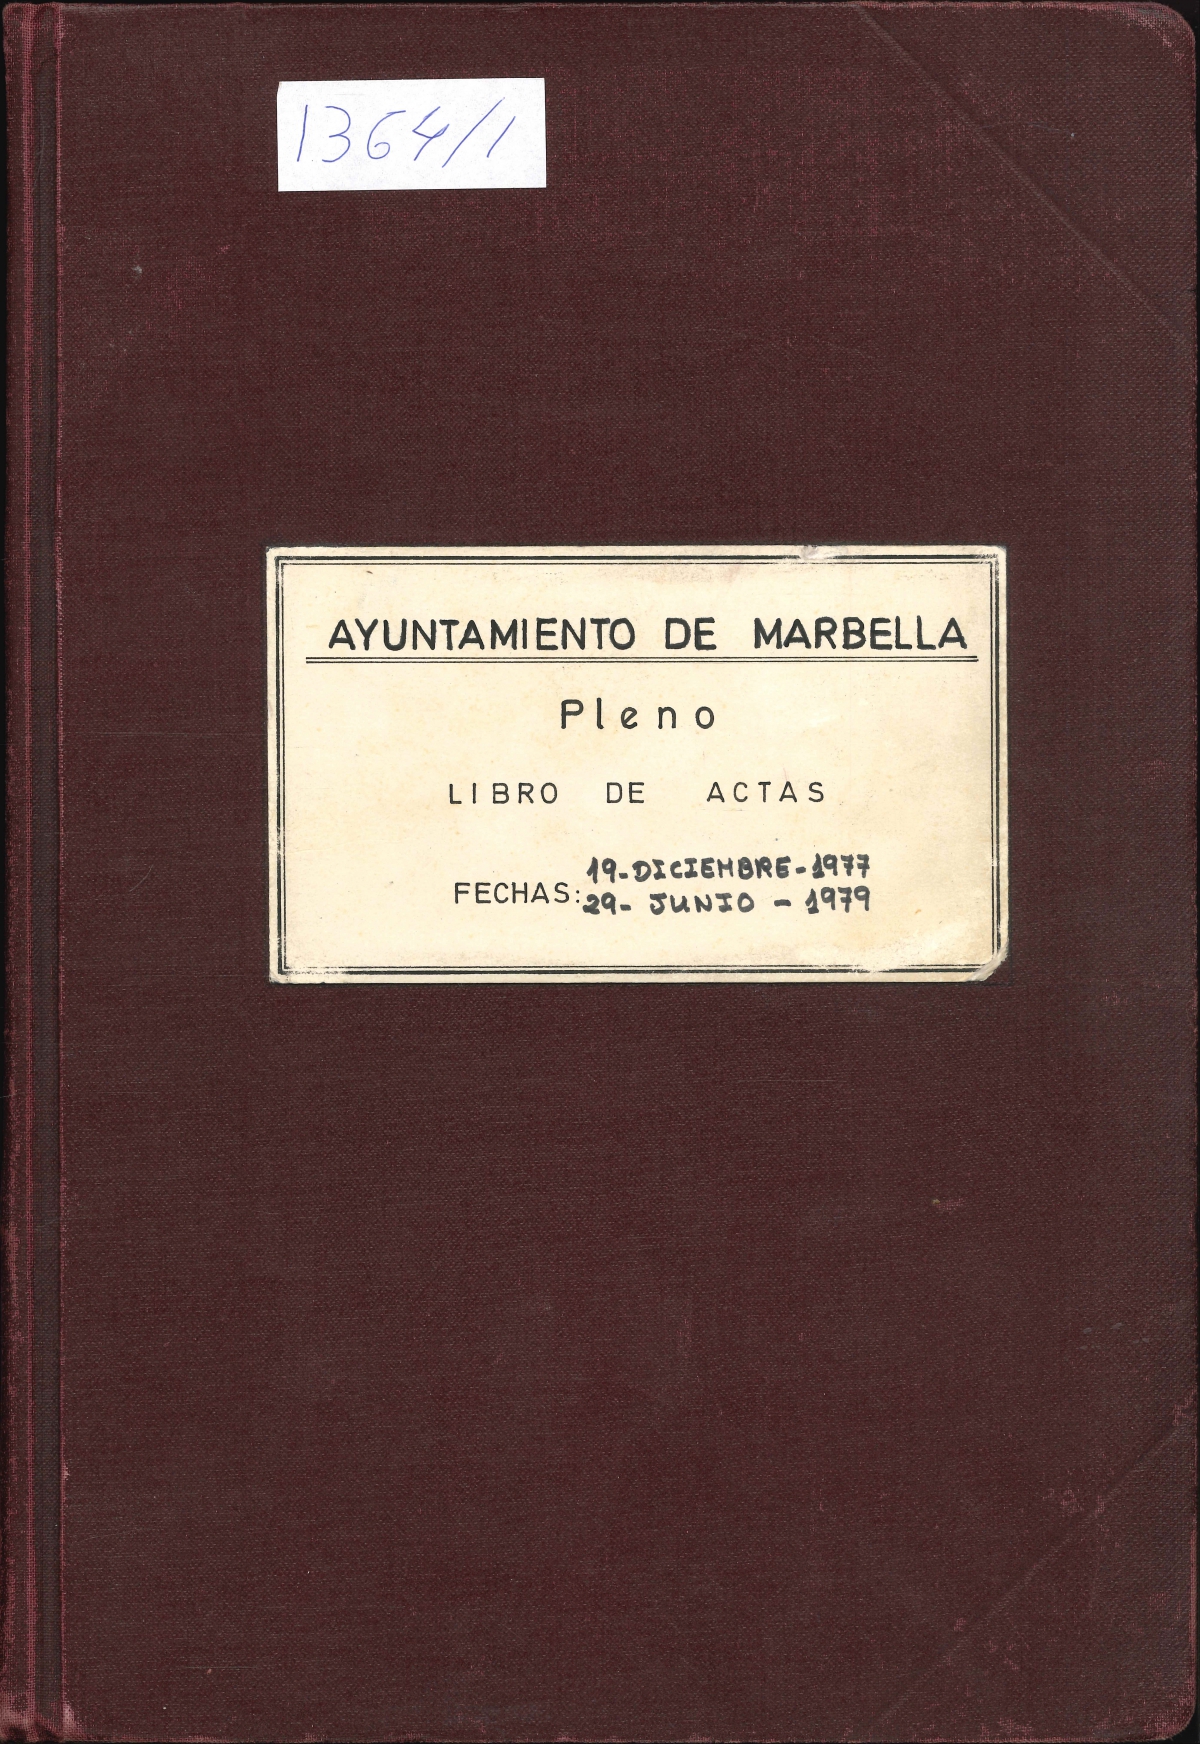 DIGITALIZADOS LIBROS DE ACTAS DEL PLENO ENTRE 1977 Y 1981